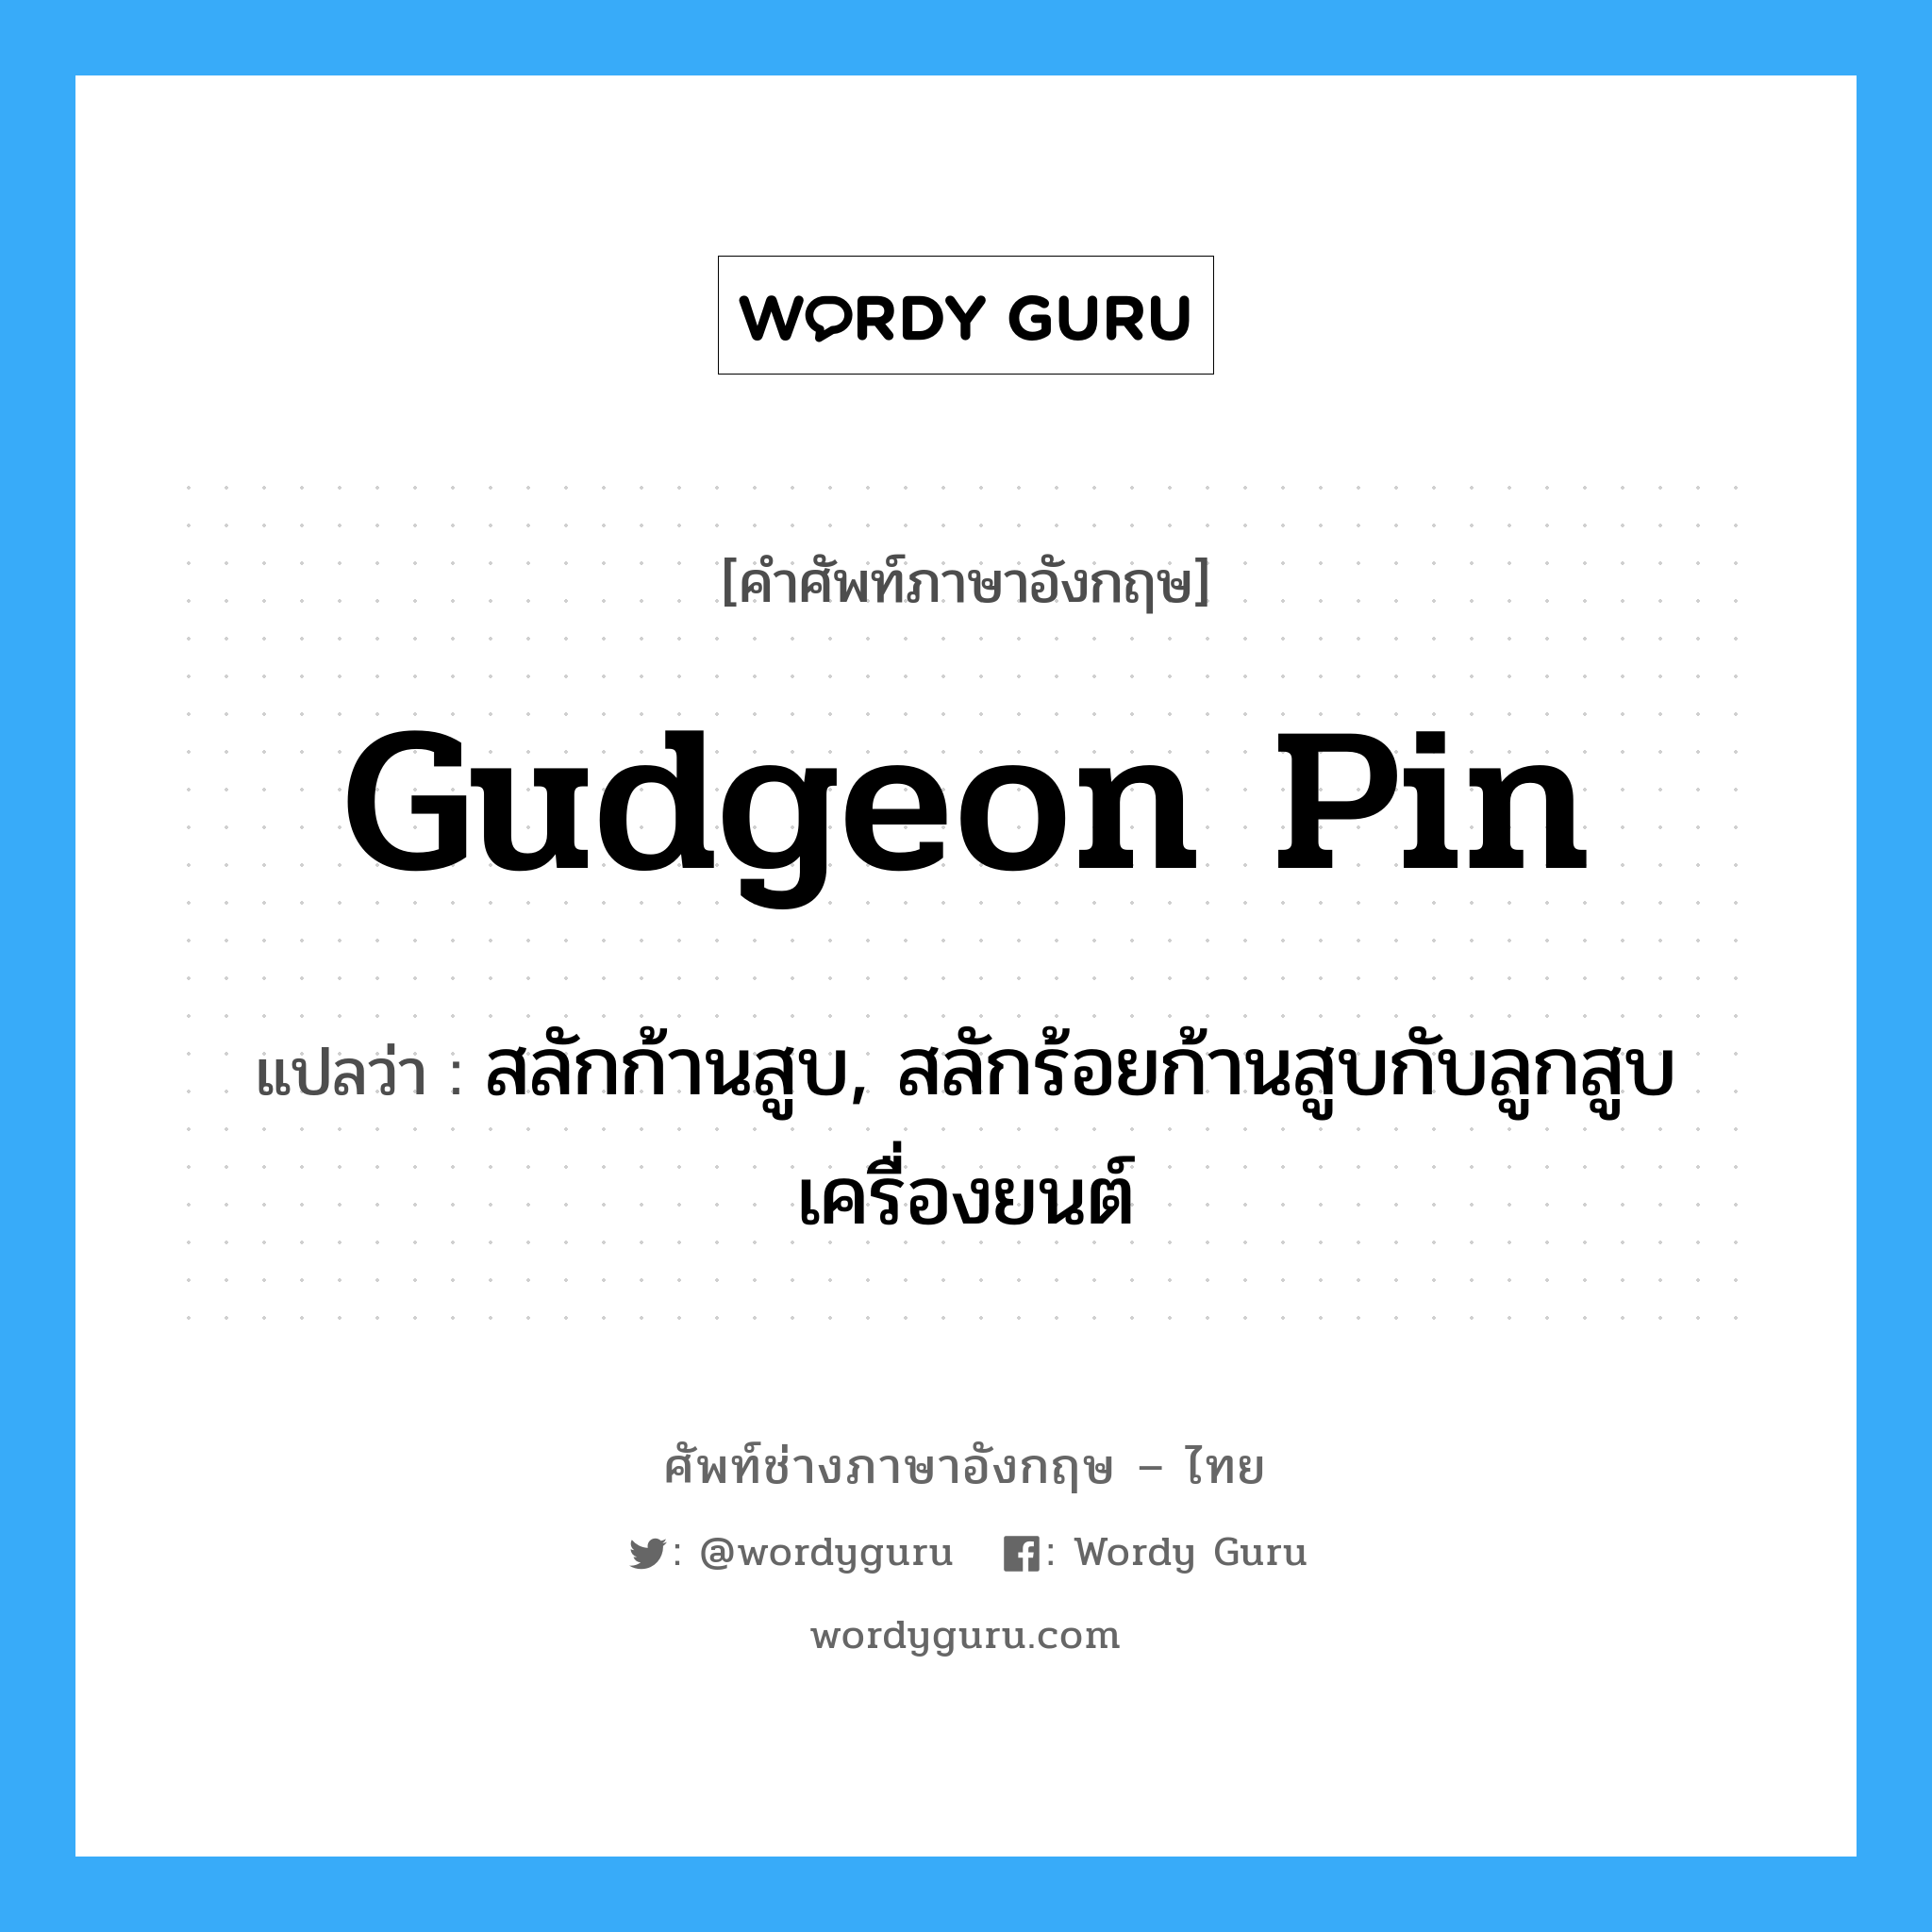 gudgeon pin แปลว่า?, คำศัพท์ช่างภาษาอังกฤษ - ไทย gudgeon pin คำศัพท์ภาษาอังกฤษ gudgeon pin แปลว่า สลักก้านสูบ, สลักร้อยก้านสูบกับลูกสูบเครื่องยนต์